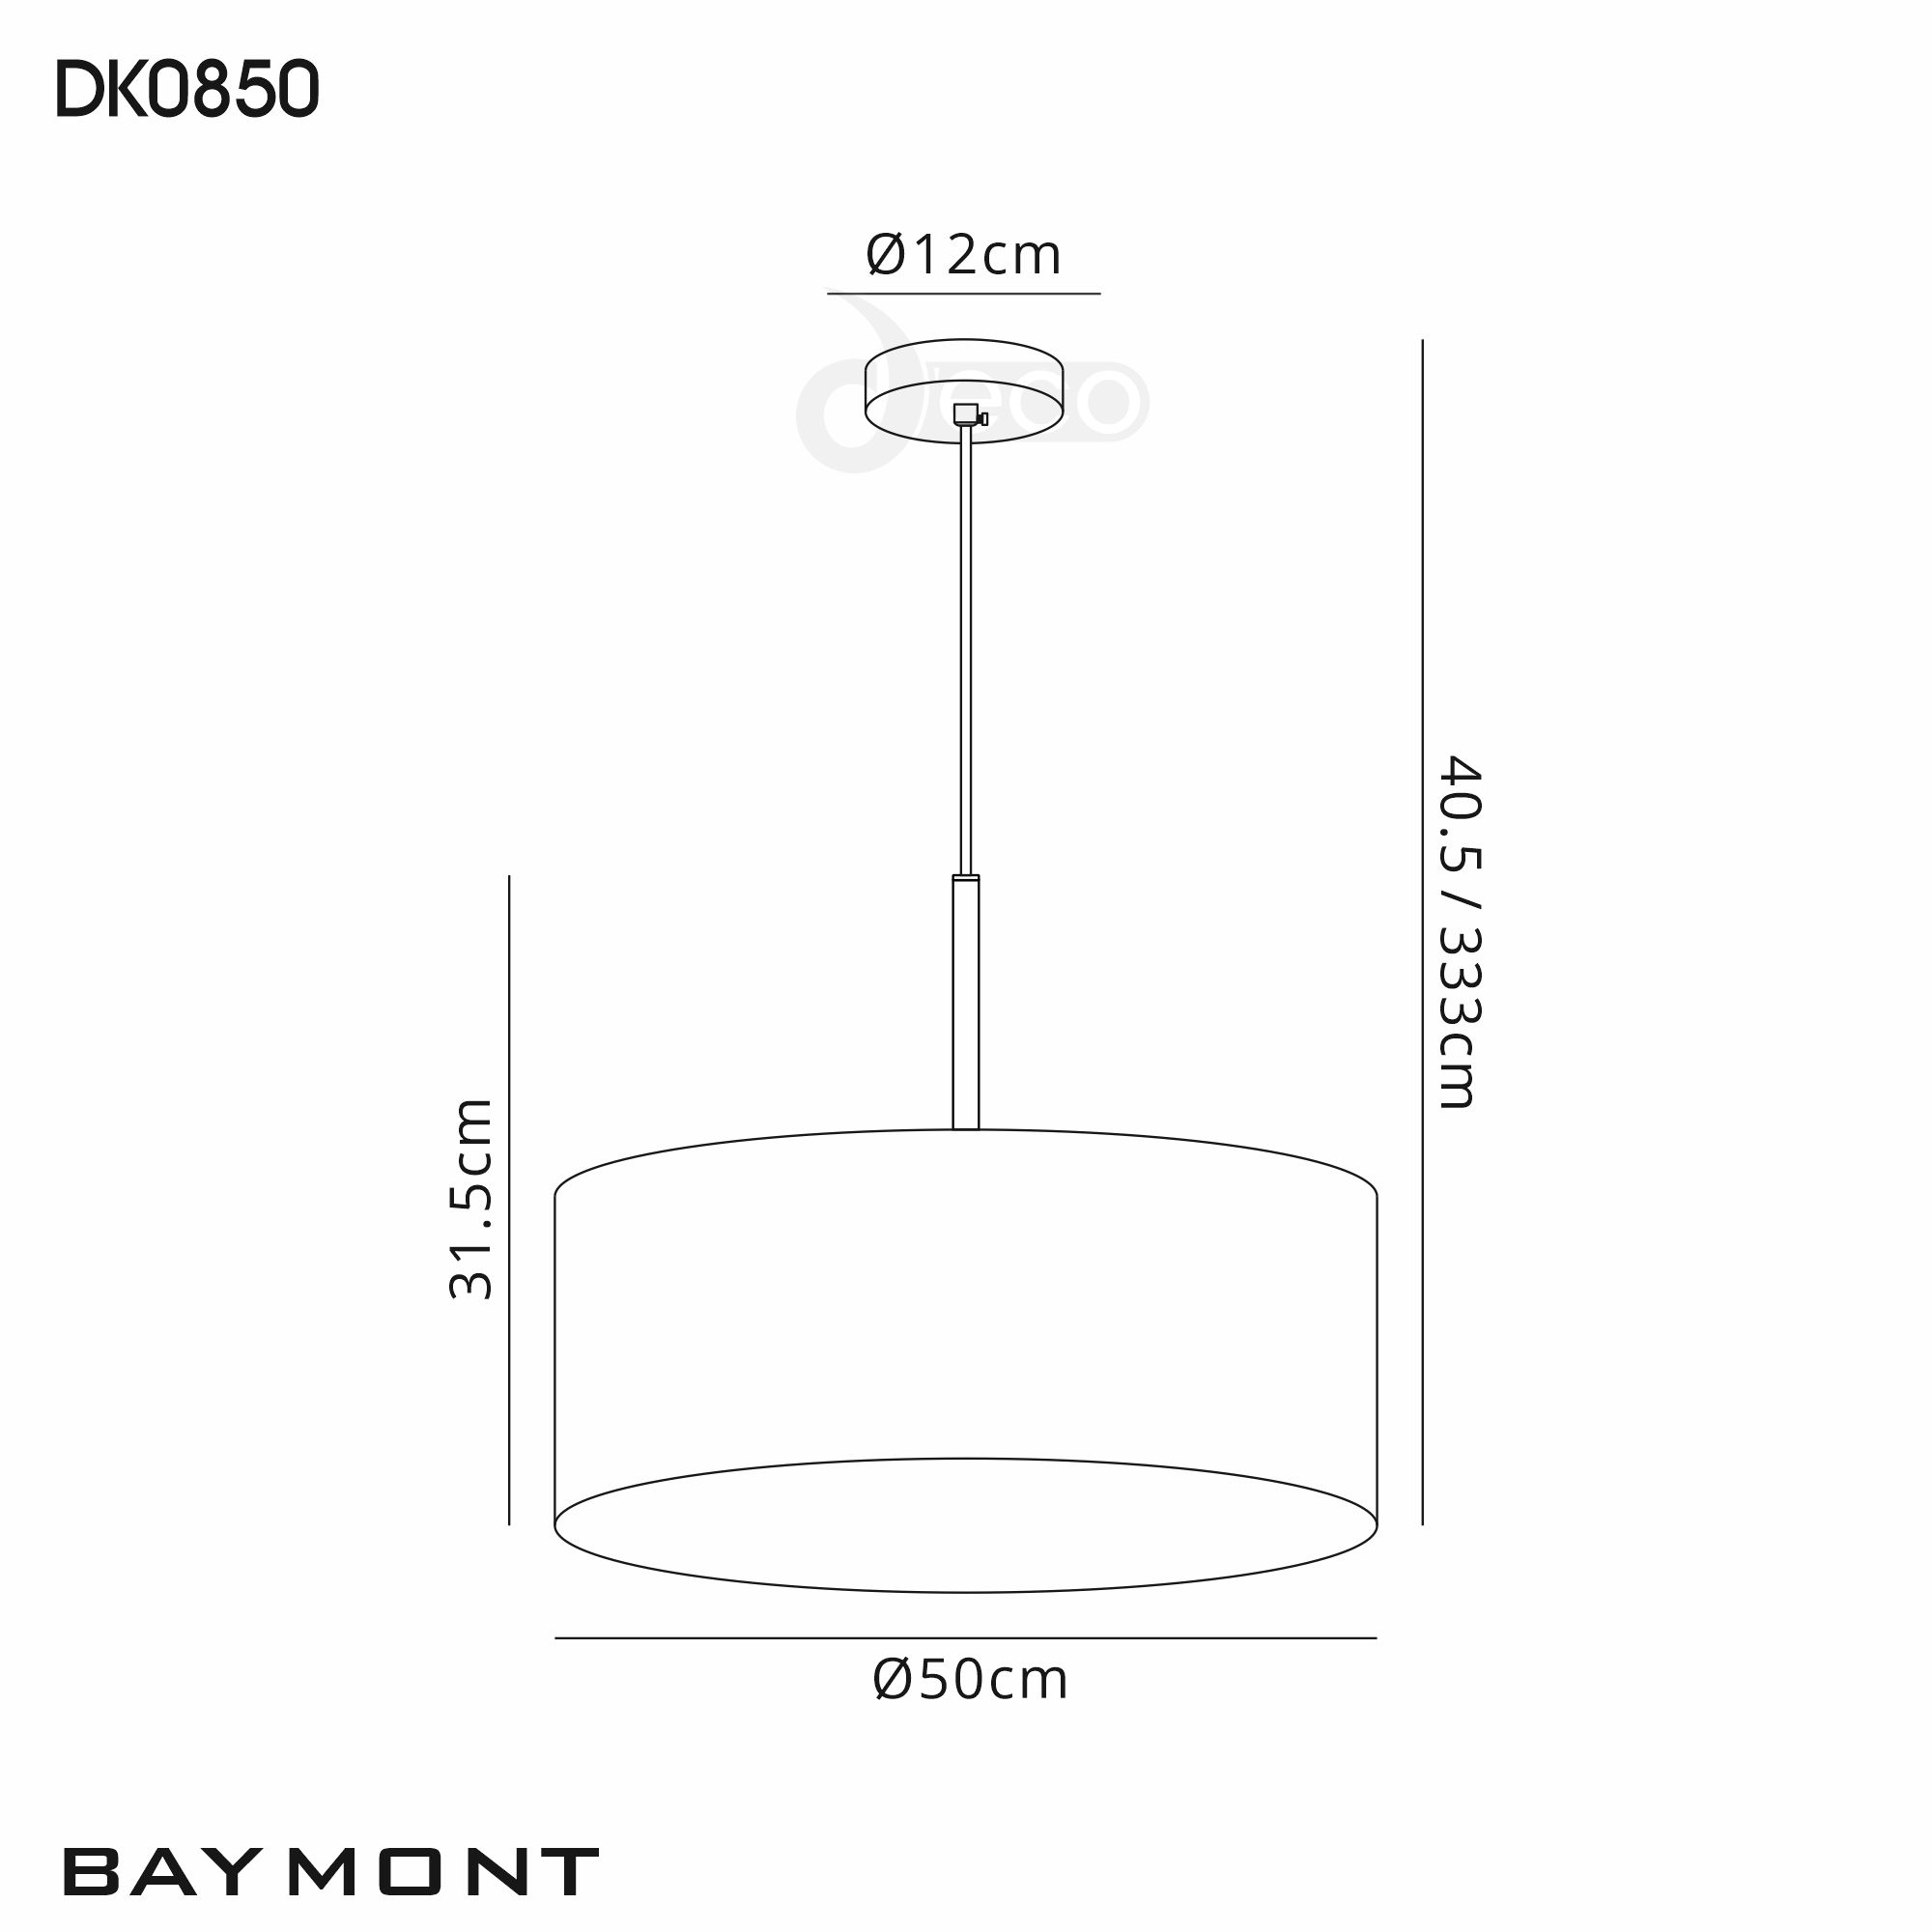 DK0850  Baymont 50cm 5 Light Pendant